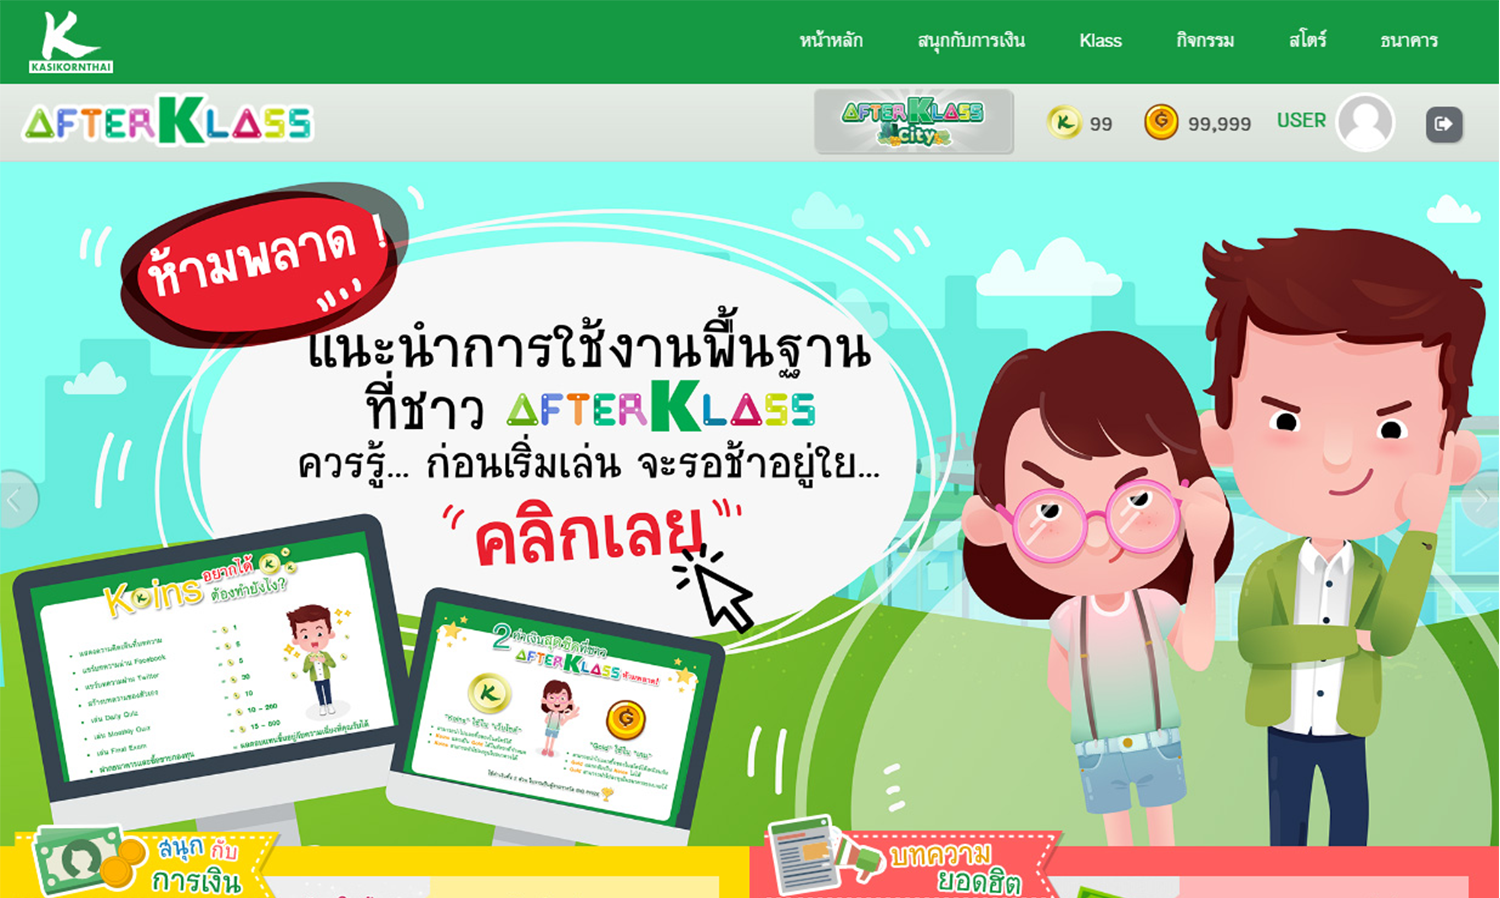 กสิกรไทยพลิกโฉม AFTERKLASS ชุมชนออนไลน์เพื่อเยาวชนแห่งแรกของไทย